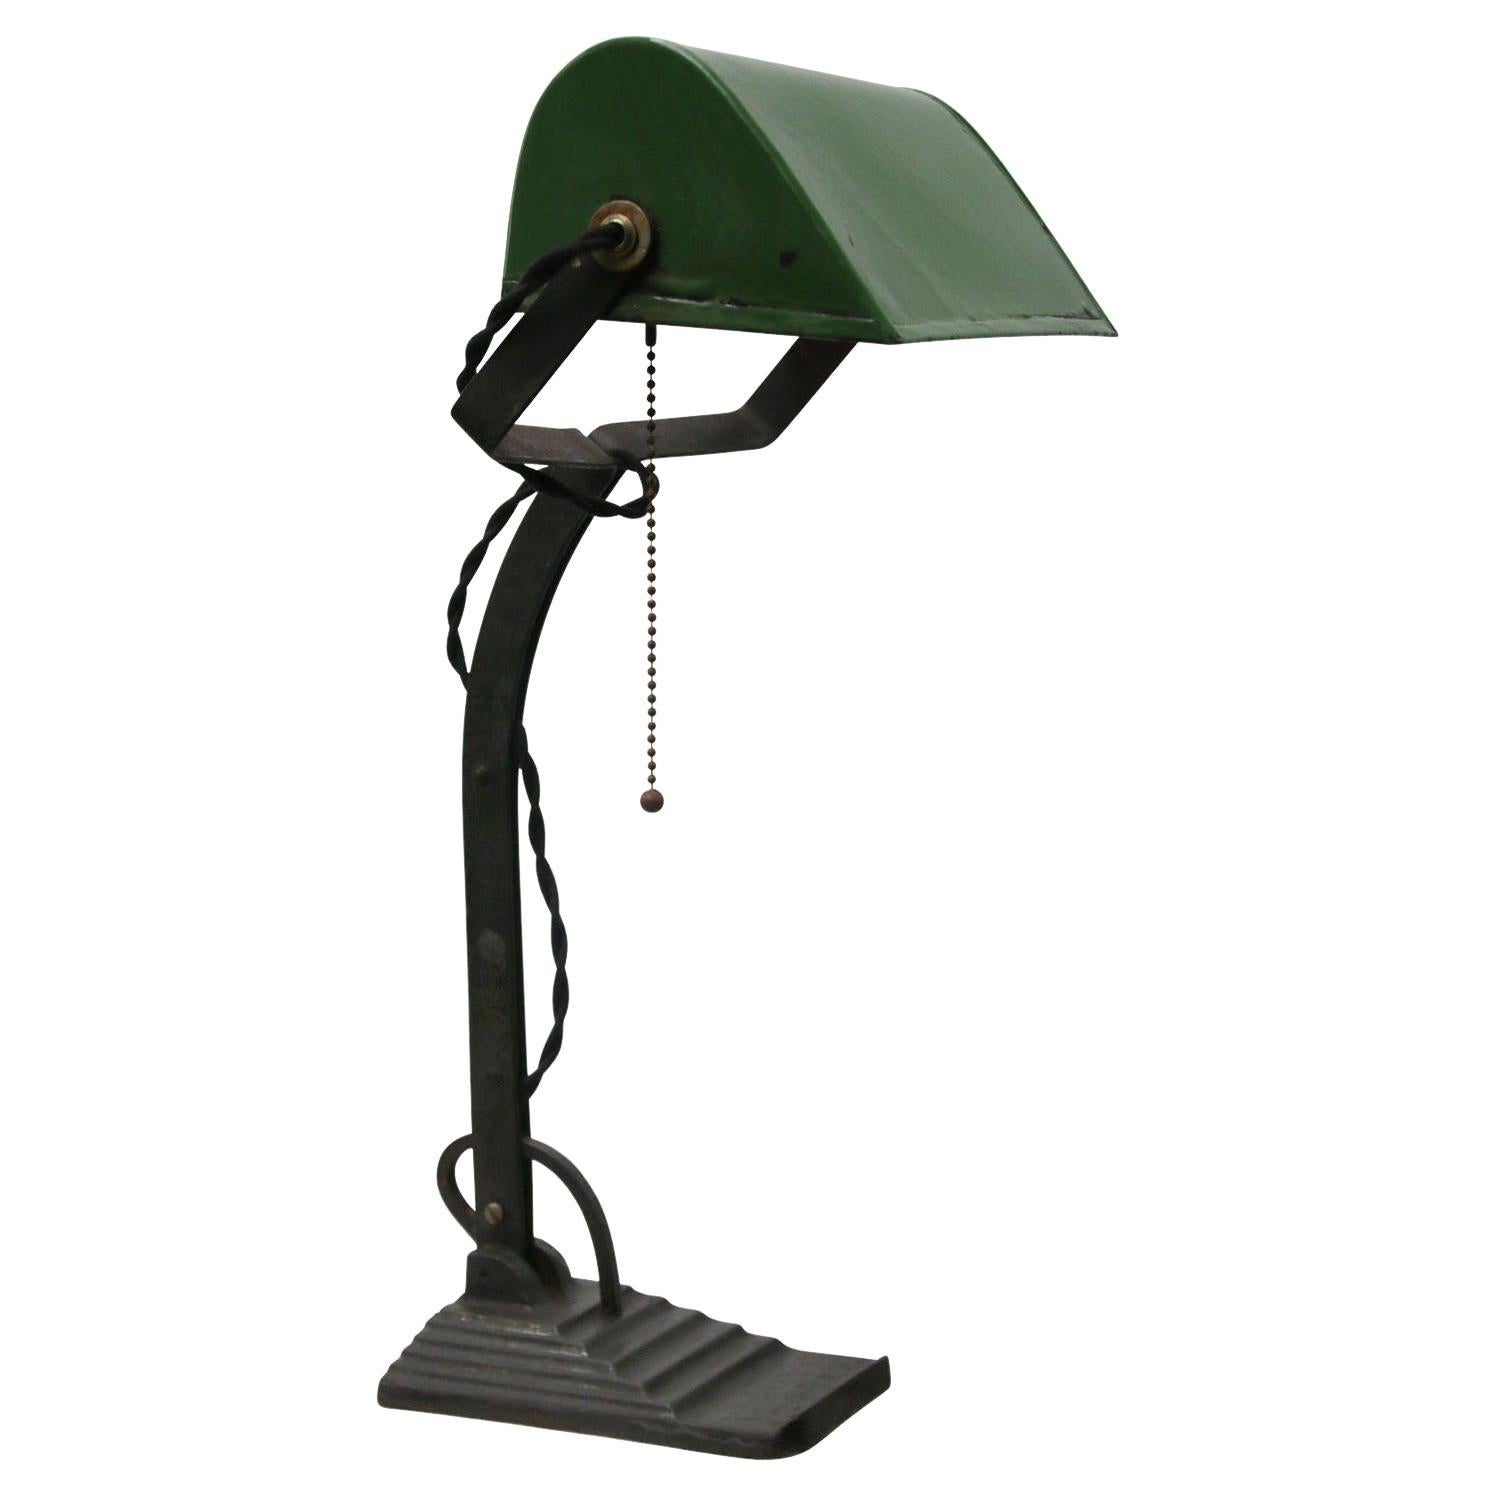 Green Enamel Vintage Industrial Banker Light Table Desk Lights For Sale